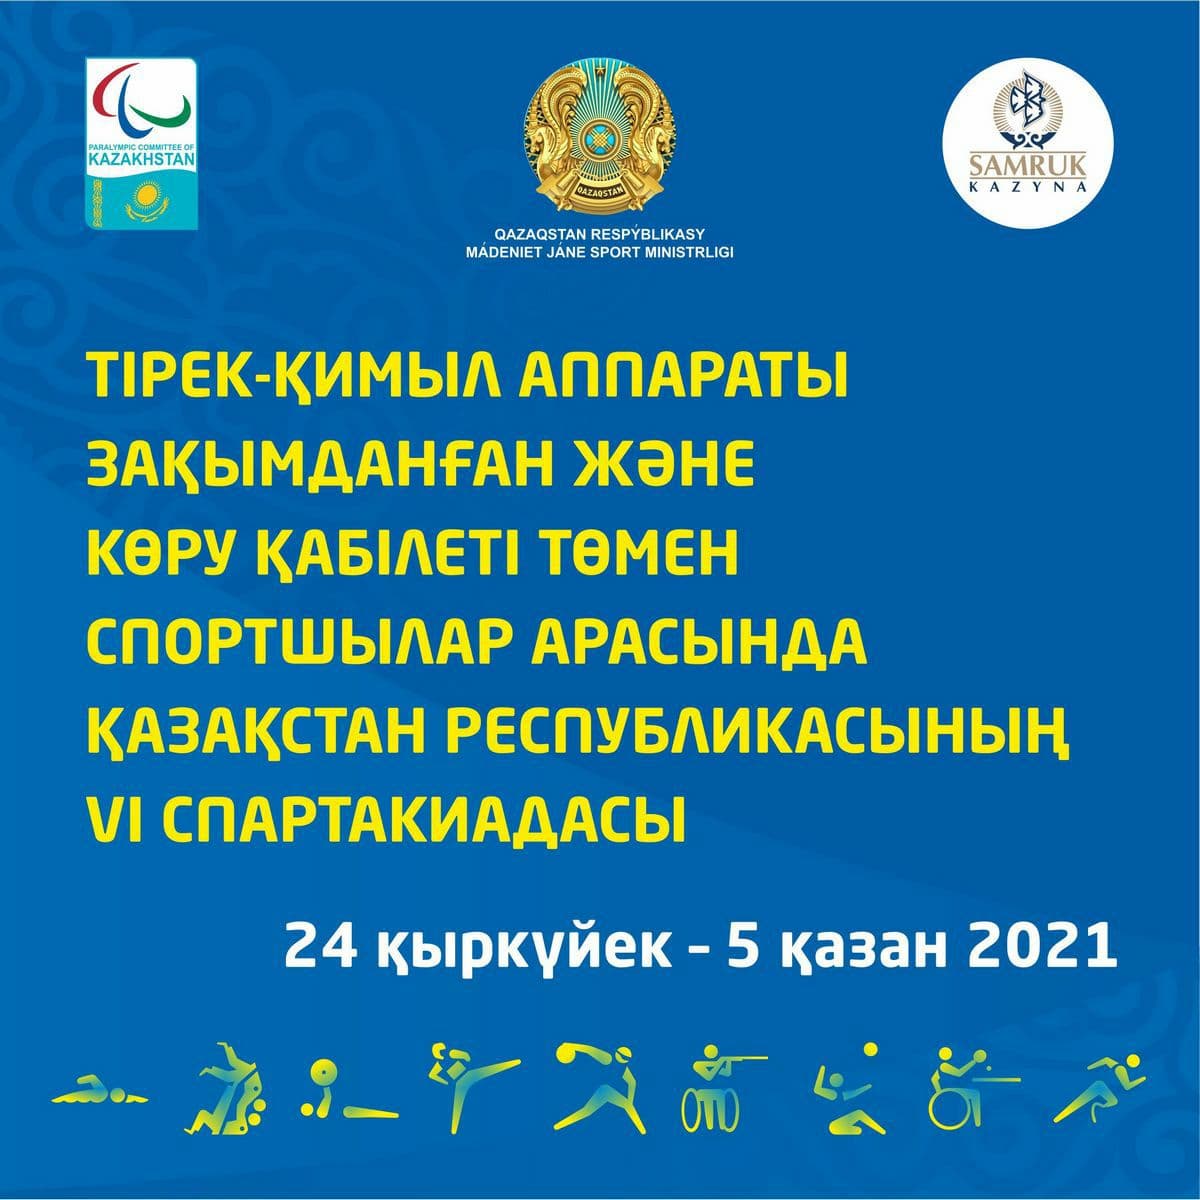 Завтра в рамках VI Спартакиады начнутся соревнования по паралимпийским видам спорта